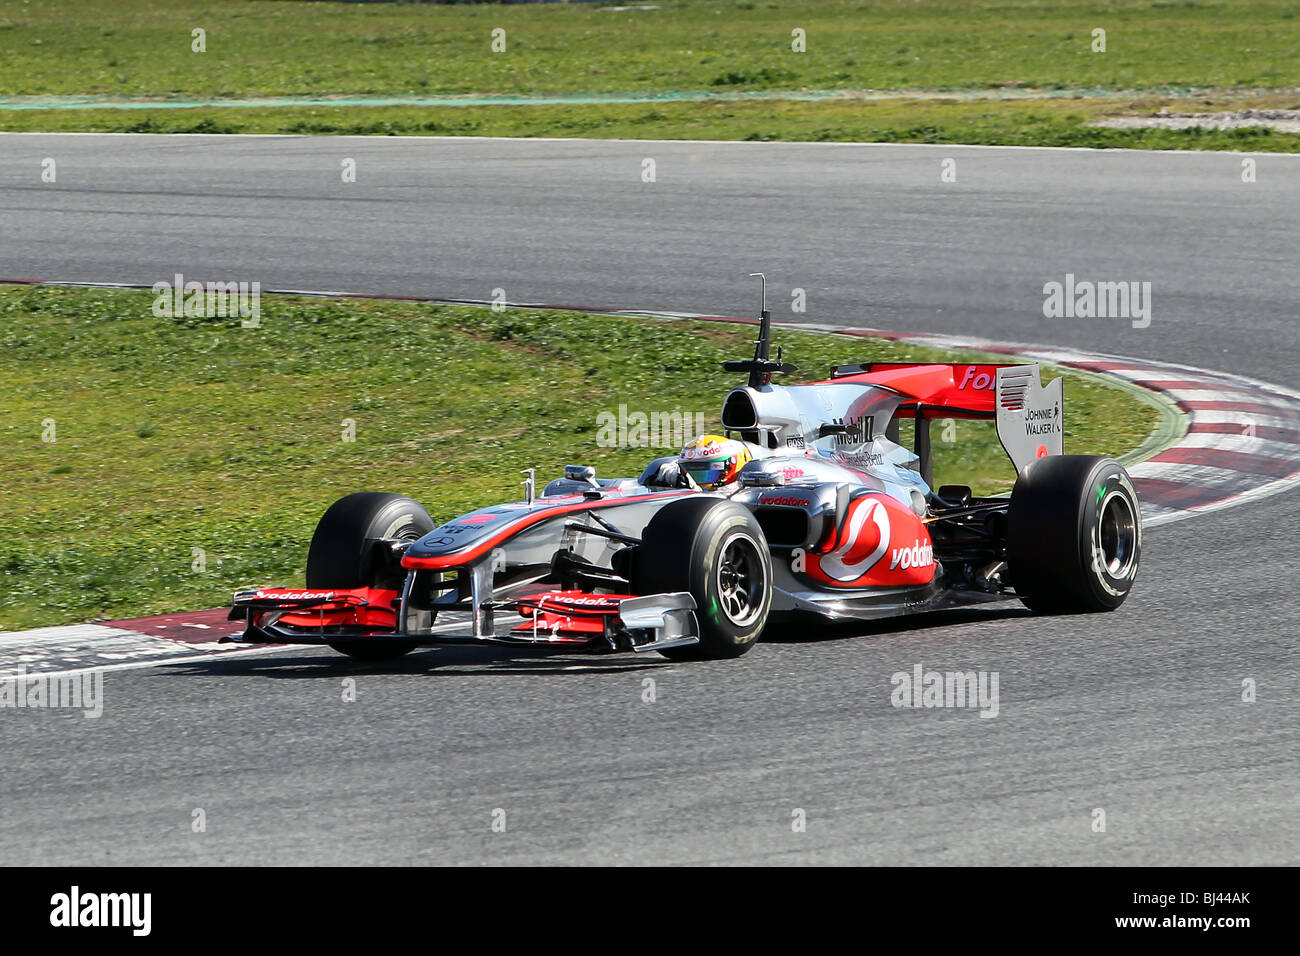 Lewis Hamilton alla guida della 2010 McLaren Mercedes auto di Formula Uno a Barcellona Foto Stock